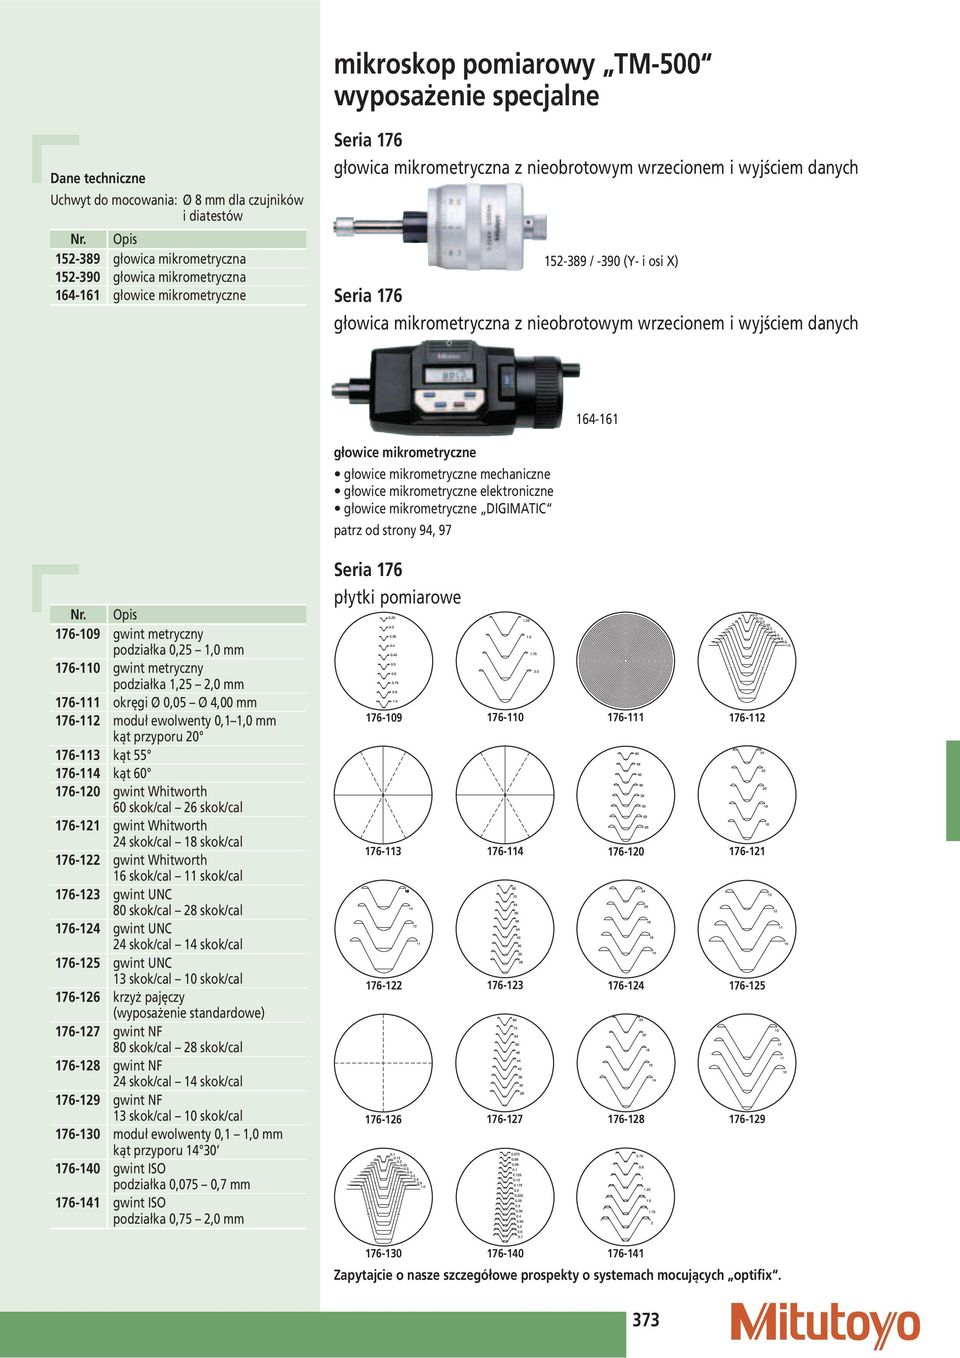 mikrometryczne głowice mikrometryczne mechaniczne głowice mikrometryczne elektroniczne głowice mikrometryczne DIGIMATIC patrz od strony 94, 97 176-109 gwint metryczny podziałka 0,25 1,0 176-110 gwint